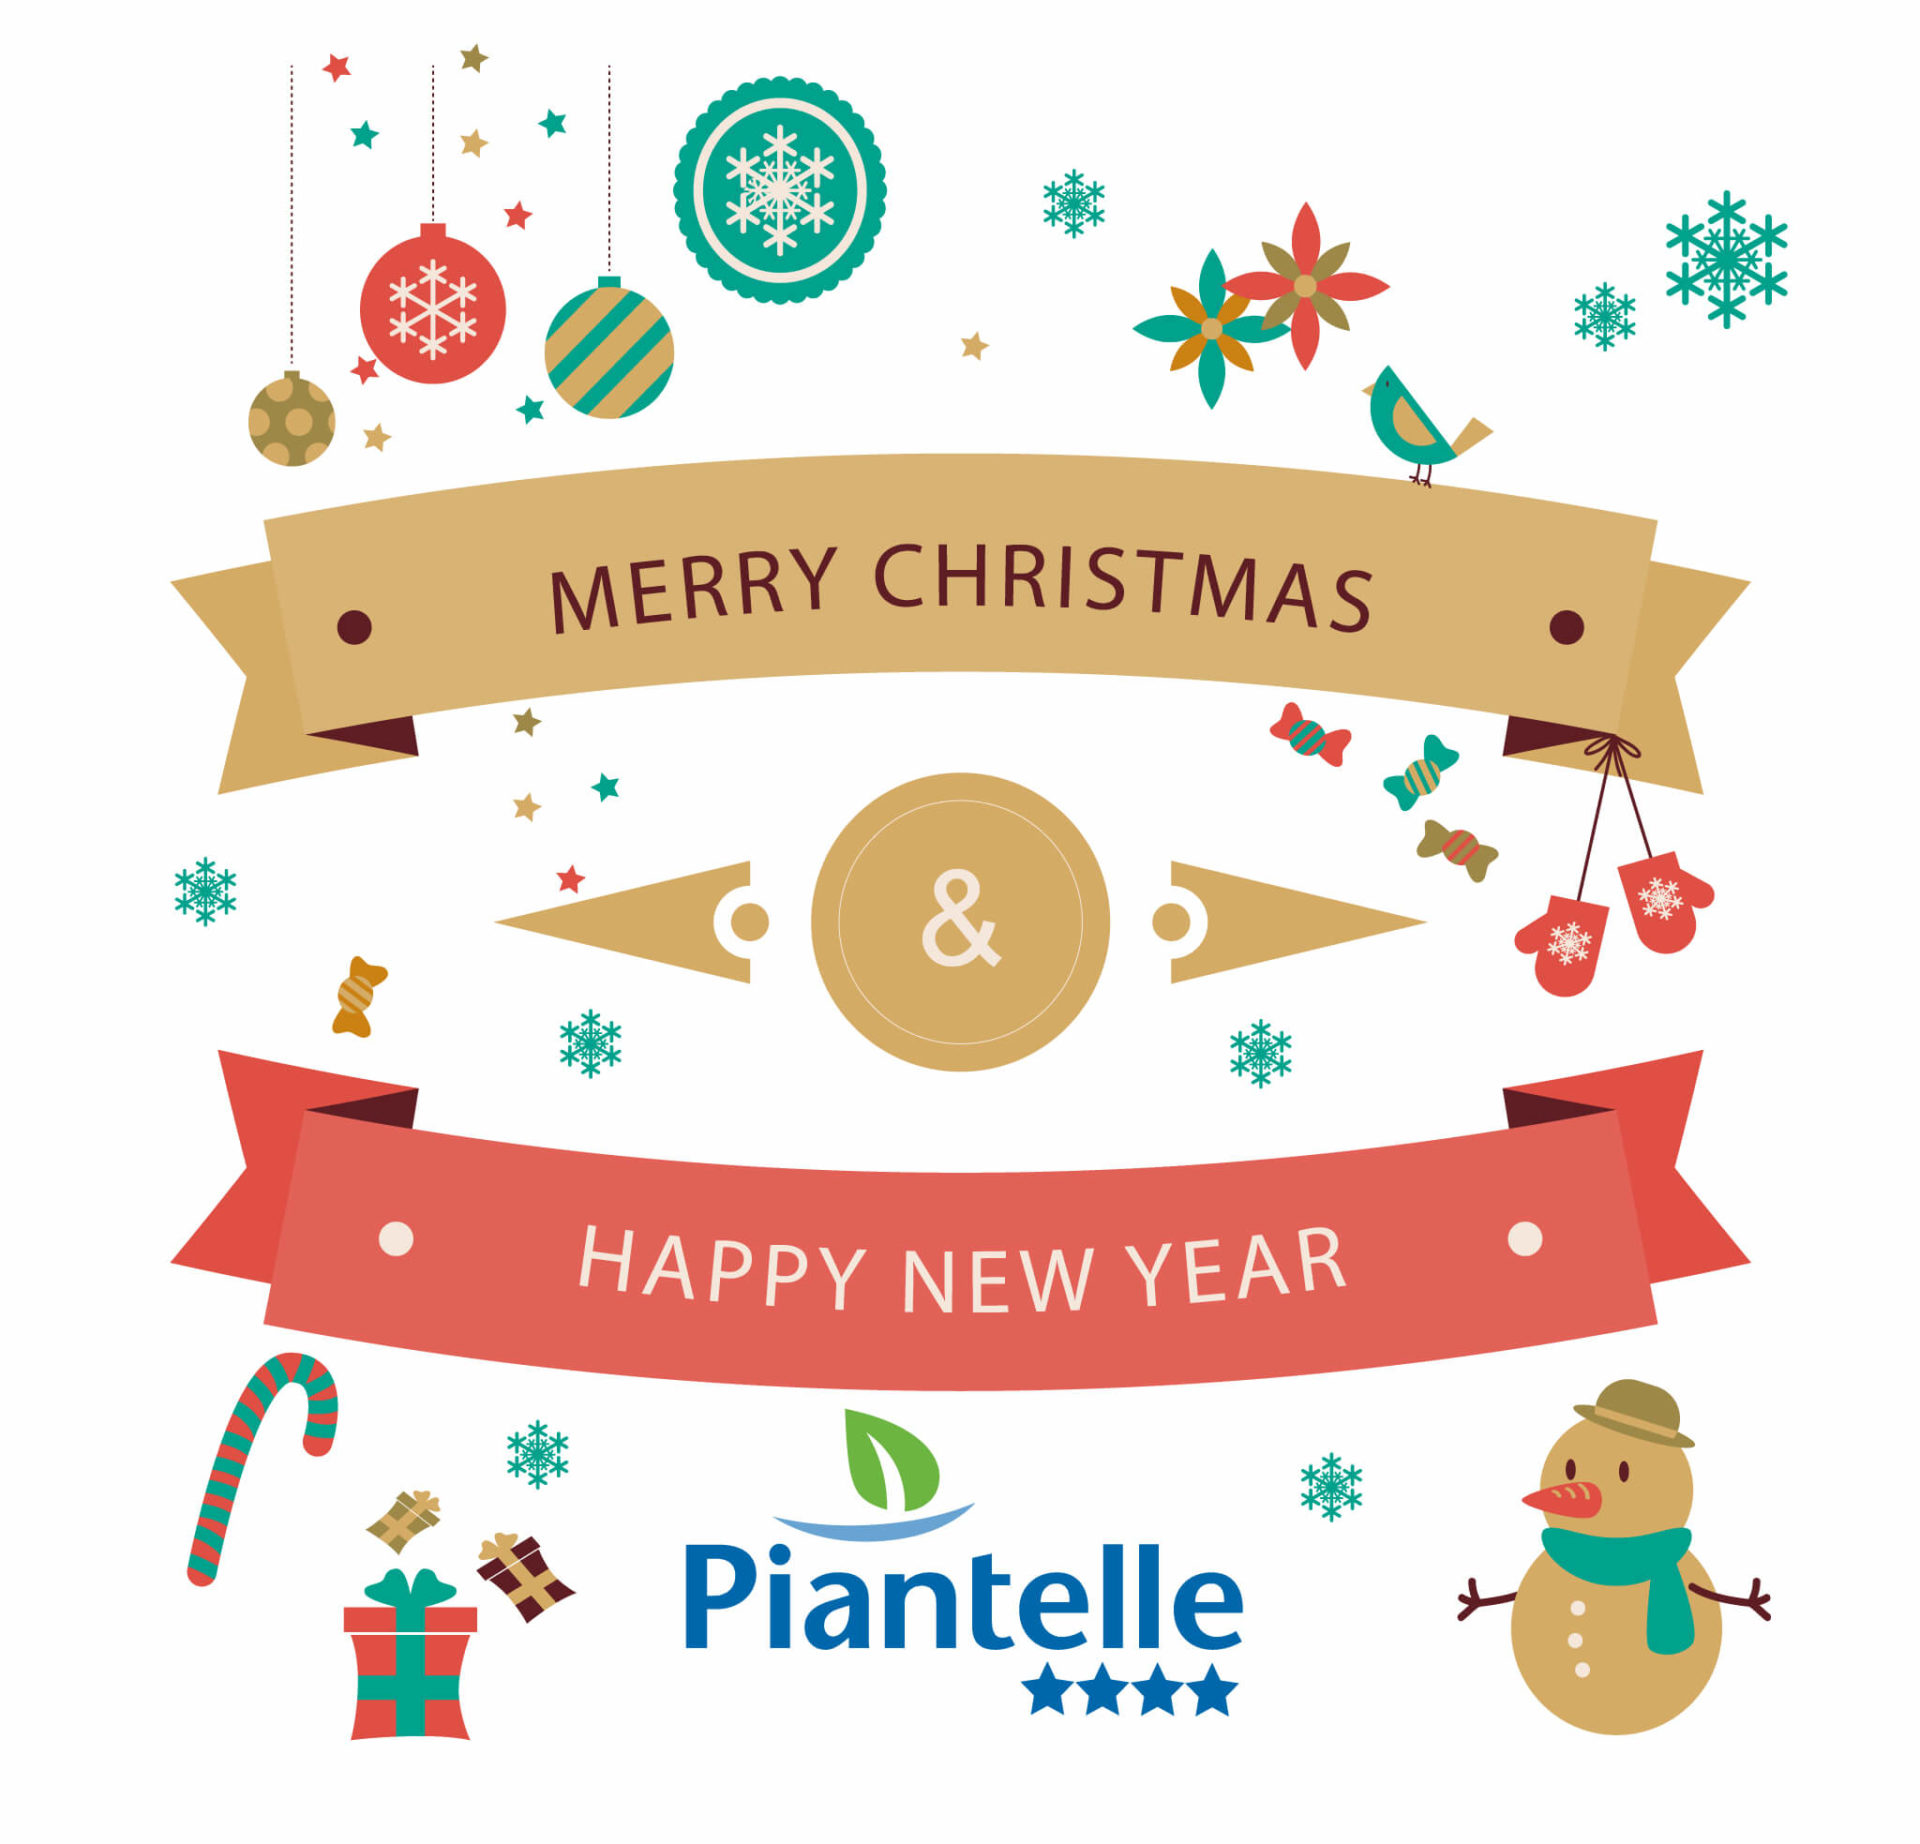 Frohe Weihnachten von Piantelle